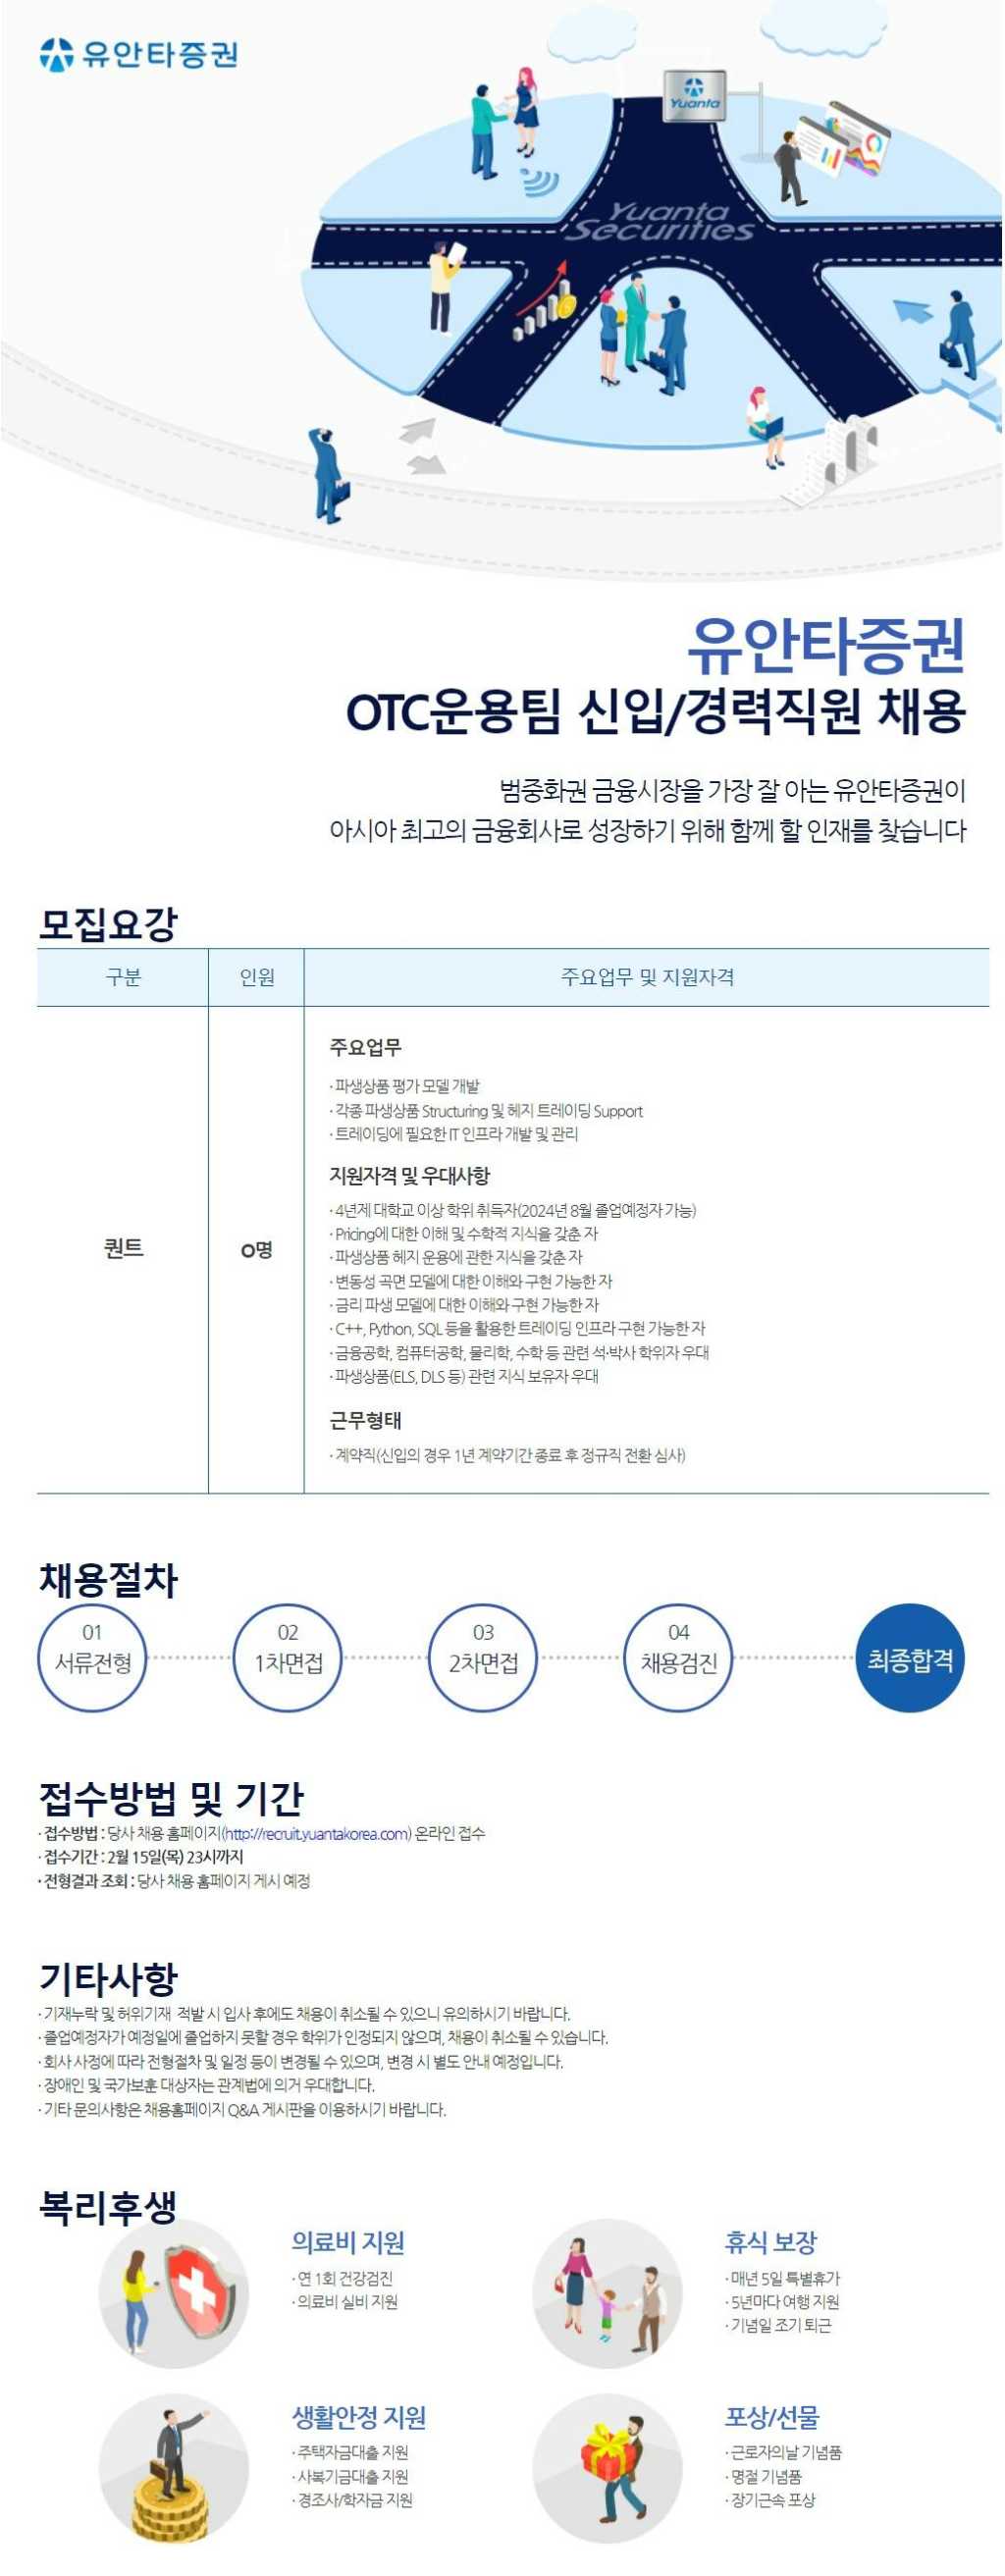 [유안타증권] OTC운용팀 신입/경력직원 채용